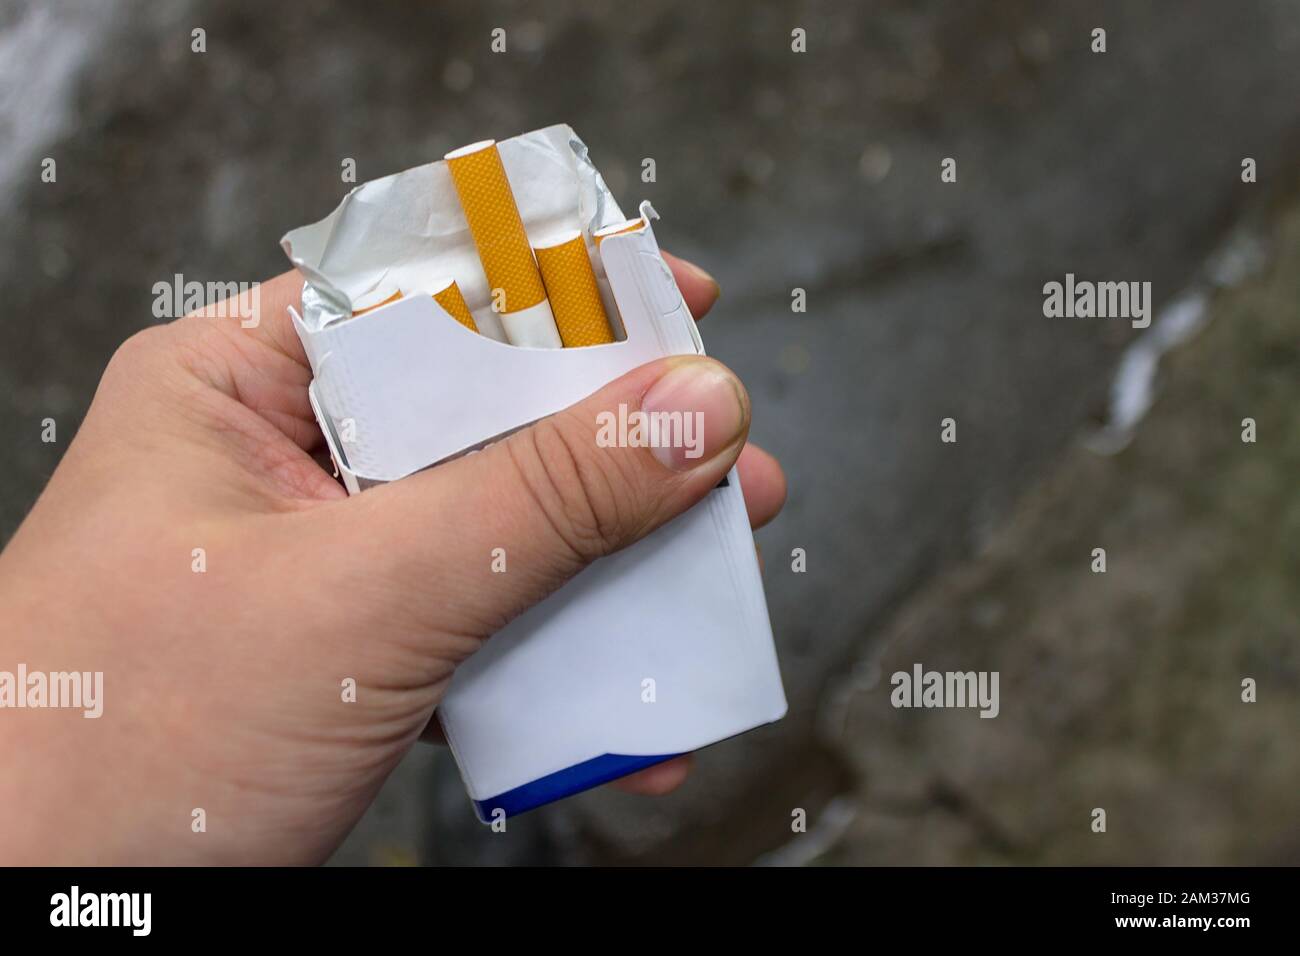 Der Raucher hält ein Päckchen in den Händen und nimmt daraus eine Zigarette heraus Stockfoto